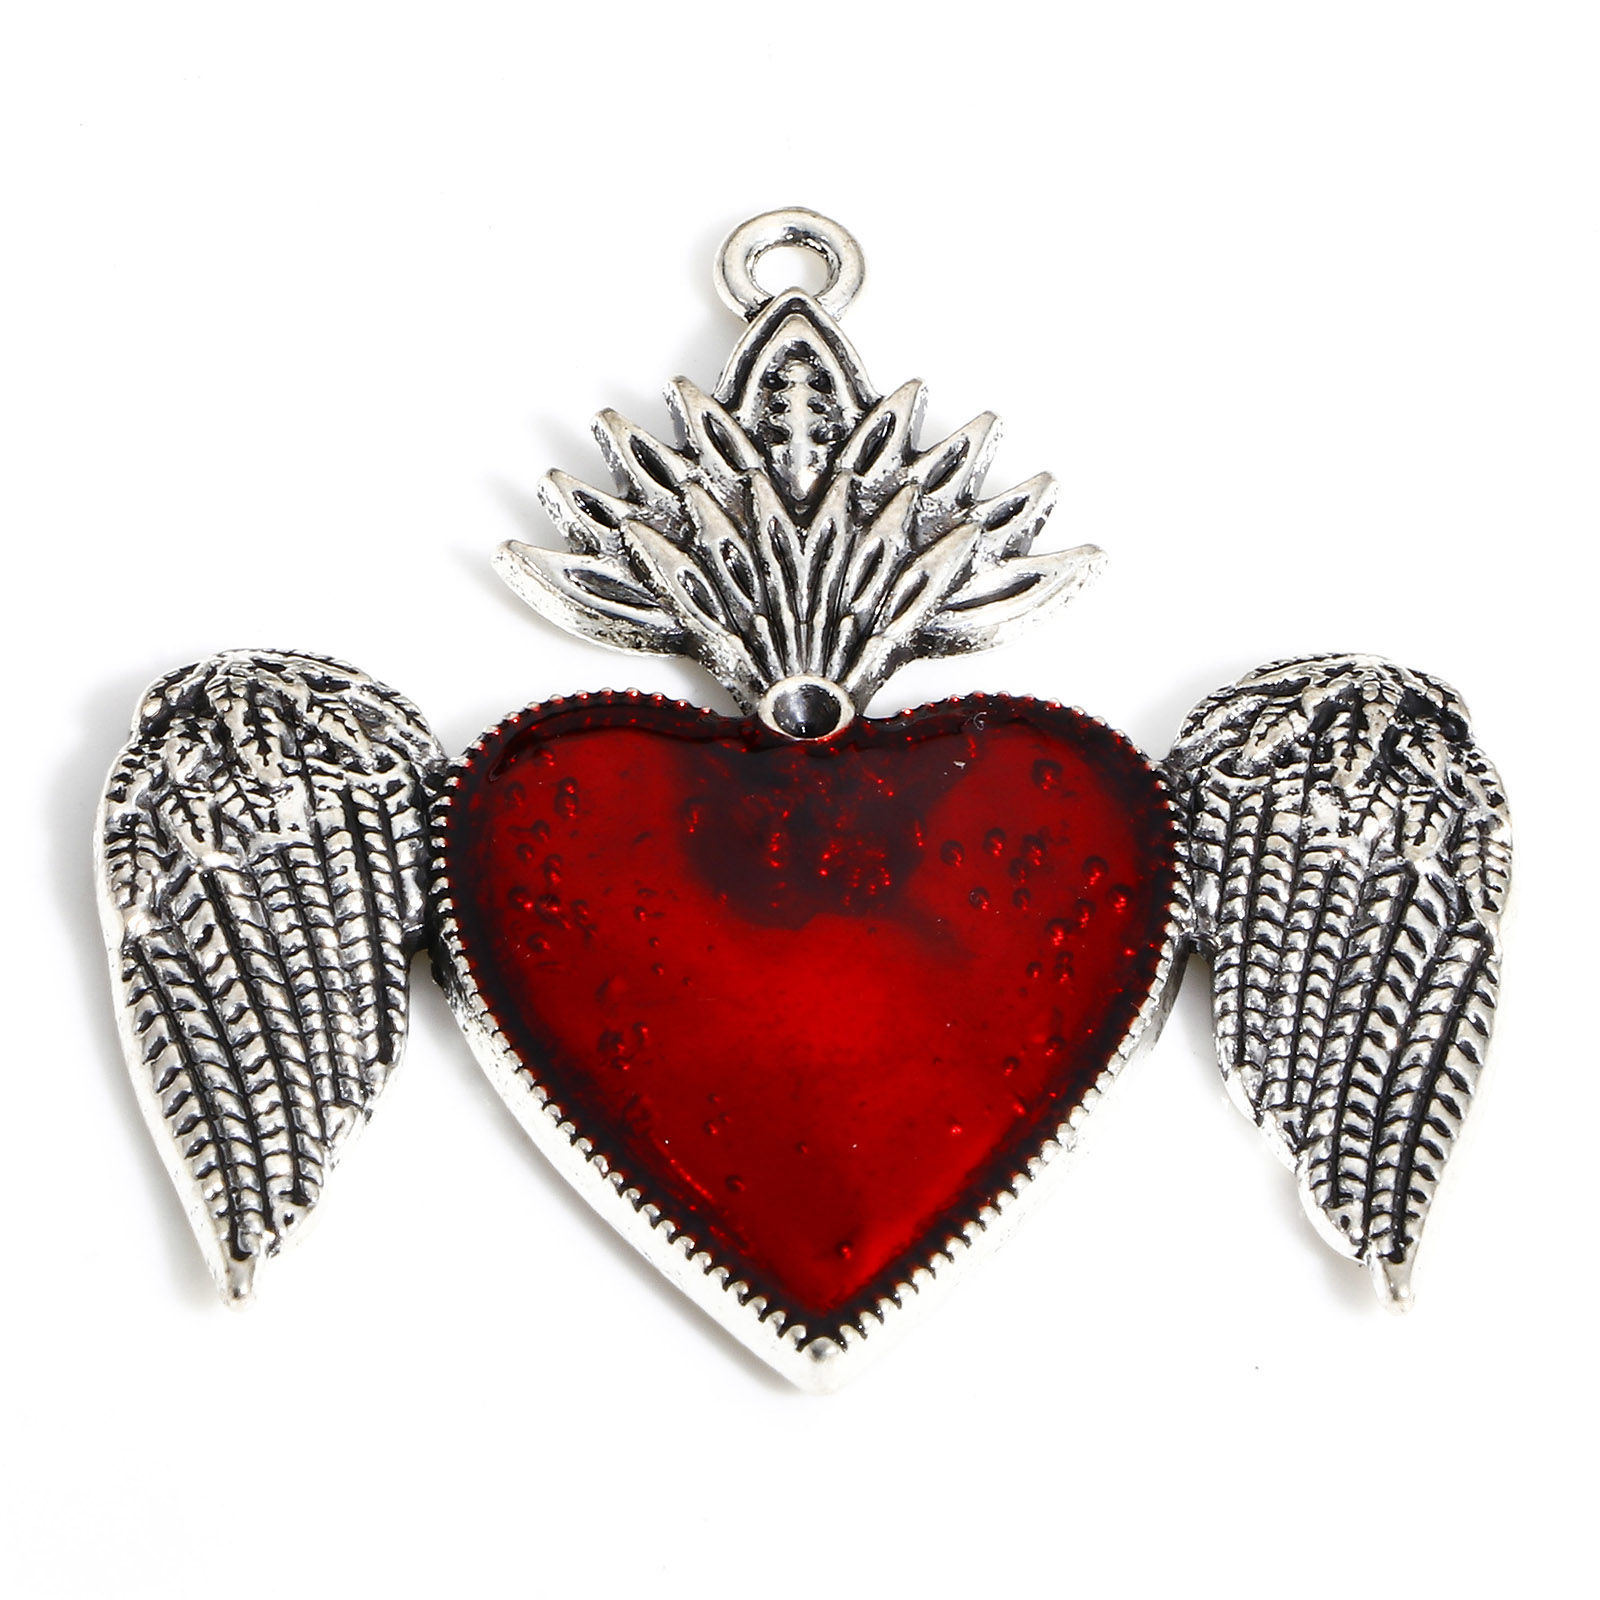 Picture of Zinc Based Alloy Religious Pendants Antique Silver Color Red Ex Voto Heart Wing Enamel 4.4cm x 4.3cm, 5 PCs